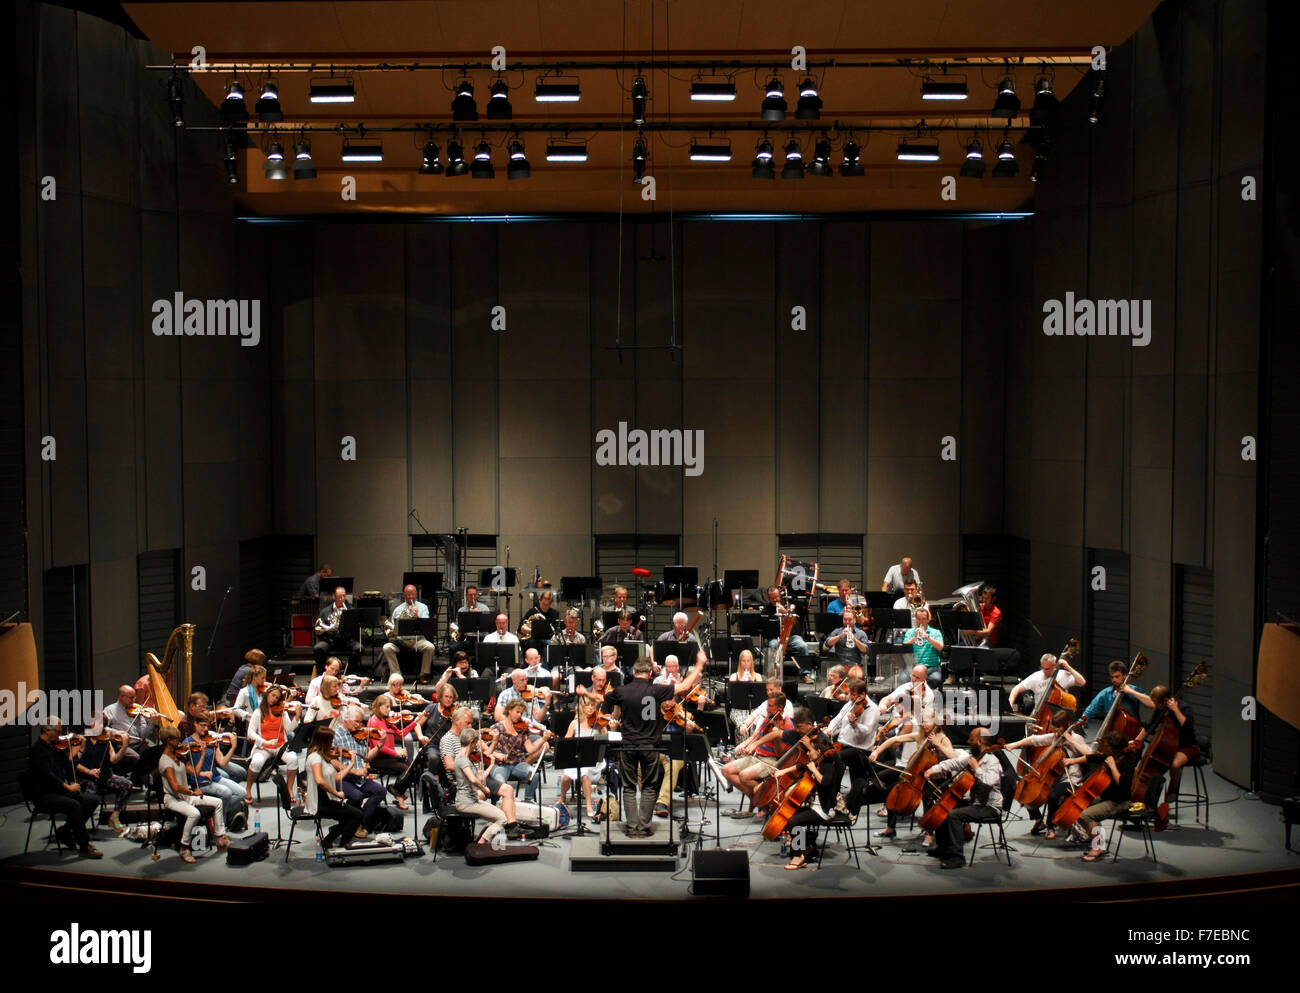 En répétition de l'orchestre sur scène une salle de concert Banque D'Images